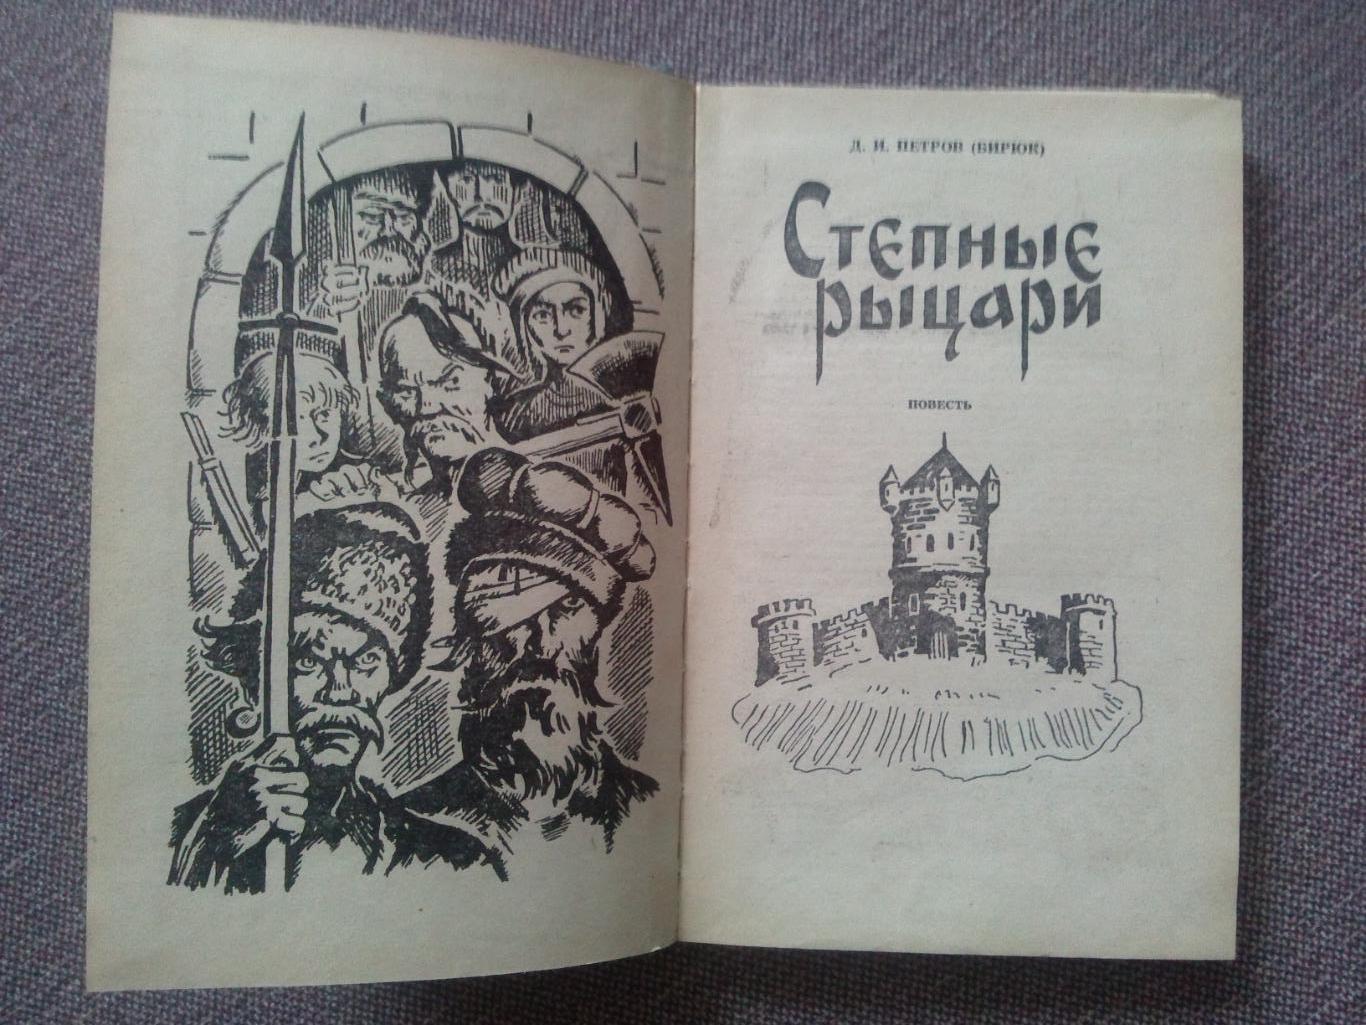 Д. И. Петров (Бирюк) - Степные рыцари 1983 г. (Донские казаки Казачество) 1